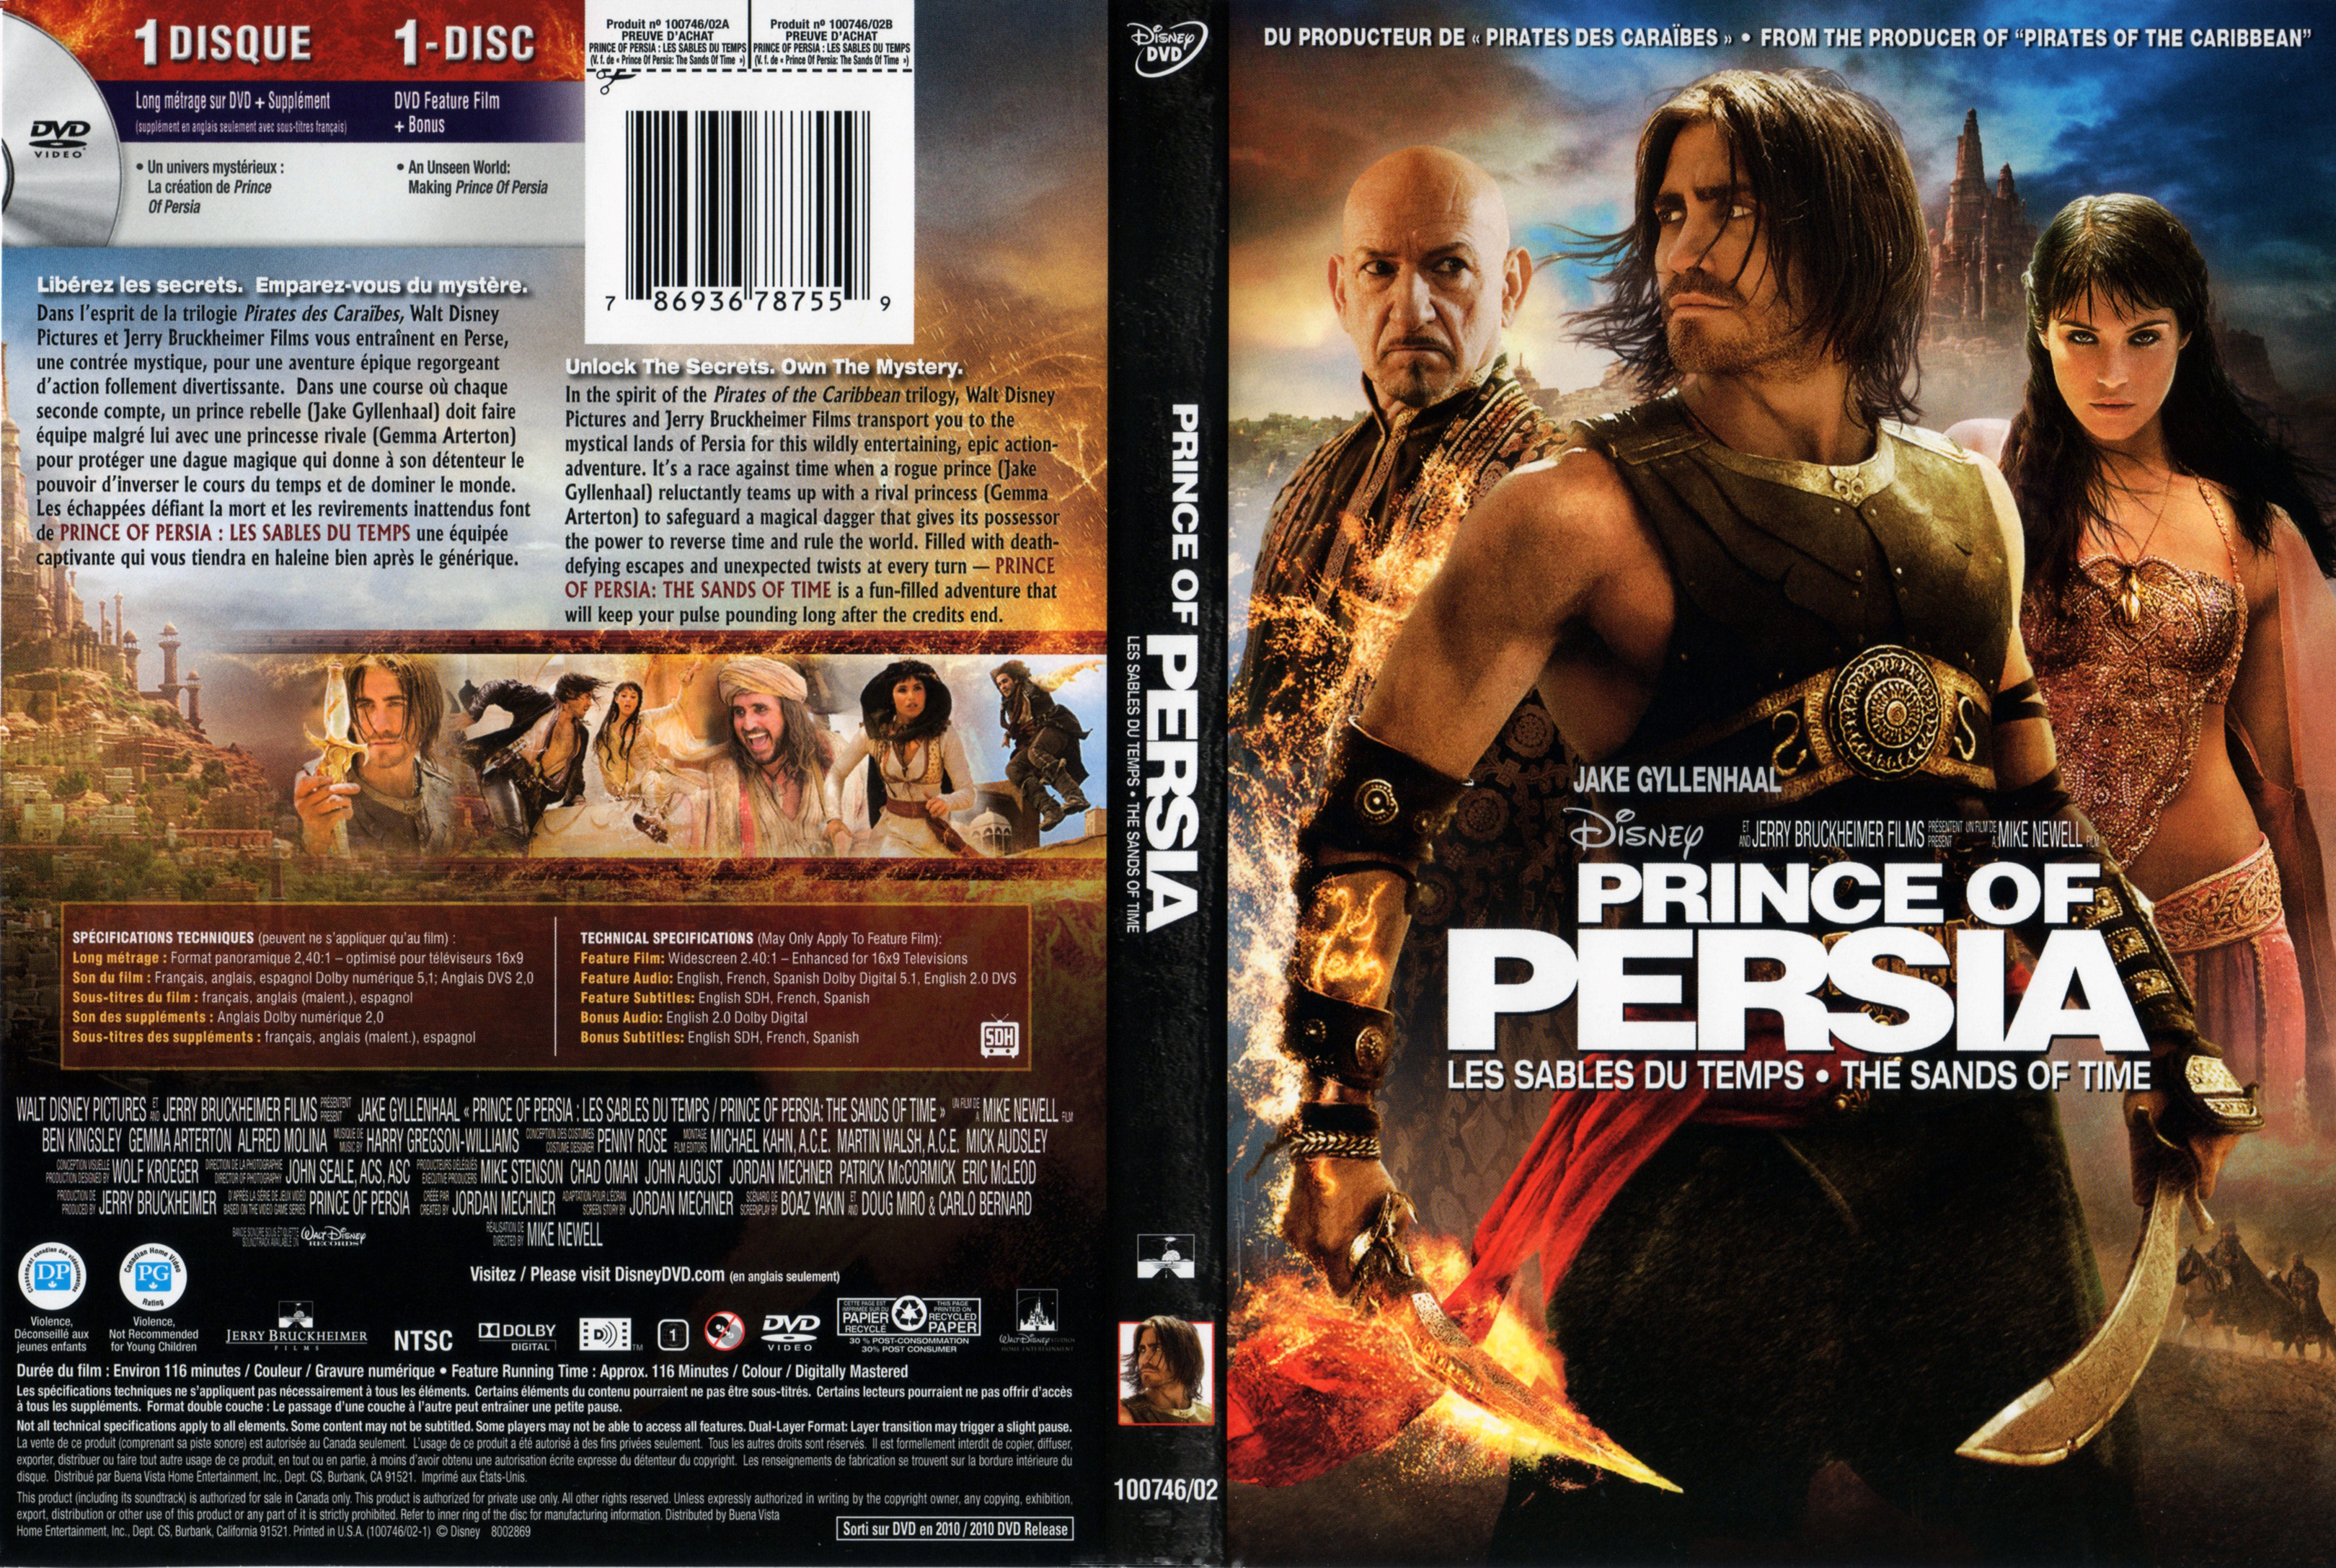 Jaquette DVD Prince of Persia - les sables du temps (Canadienne)